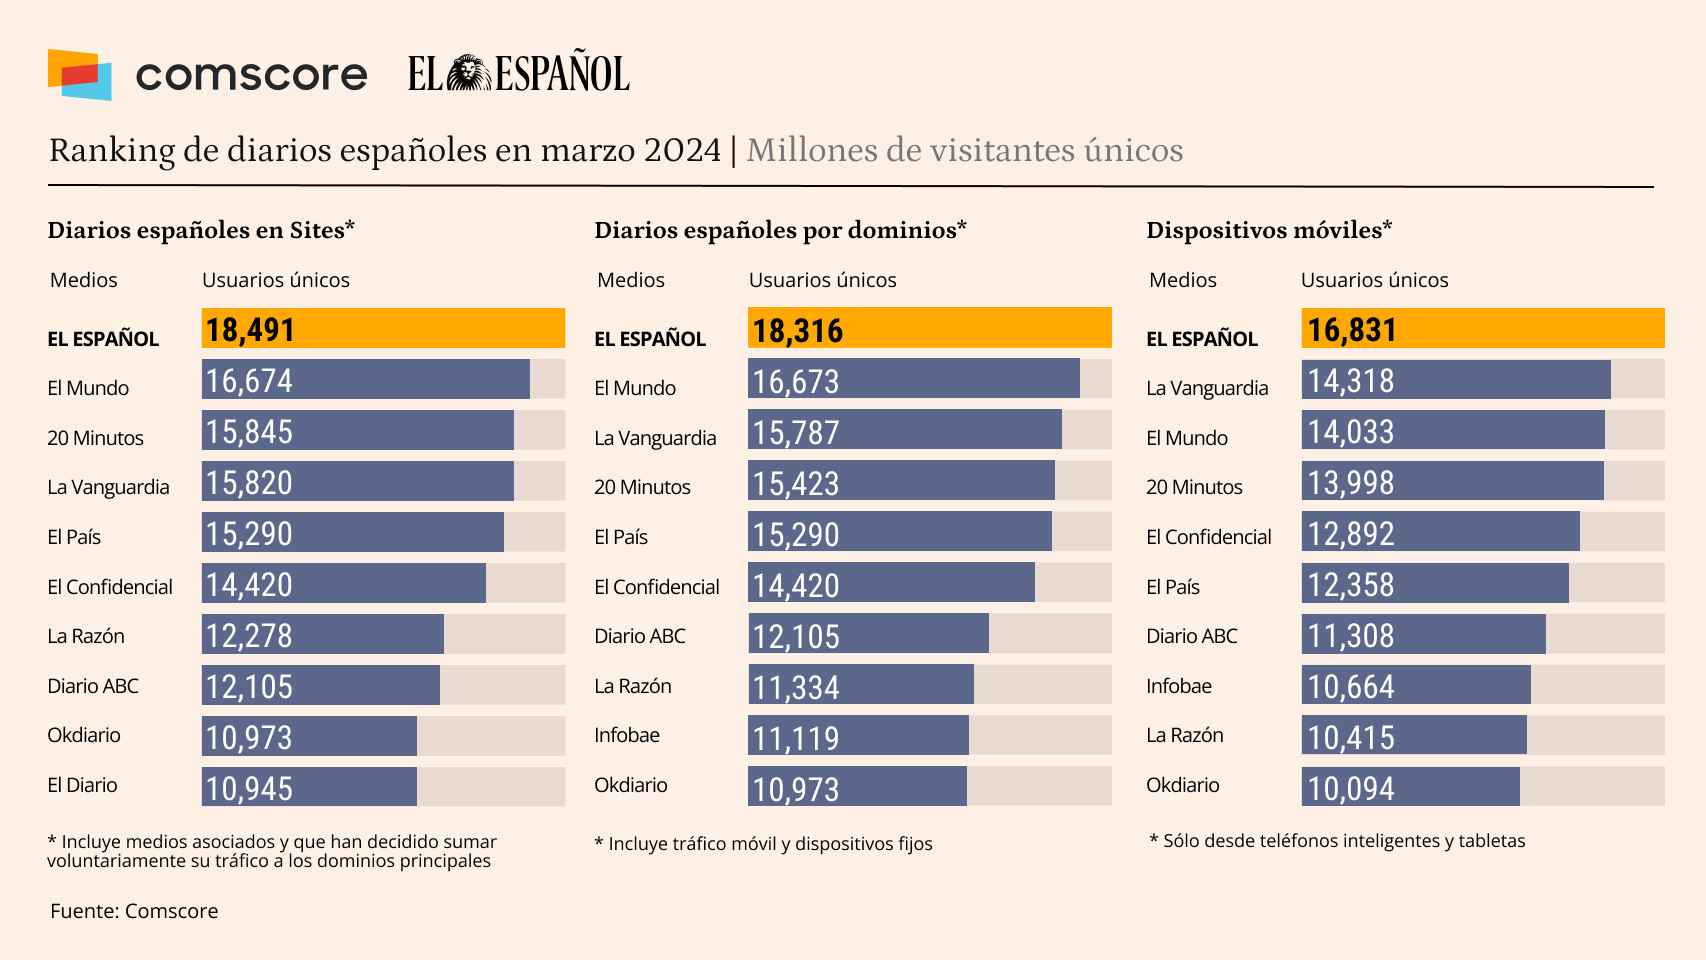 ComScore certifica el liderazgo de  El Español  en la prensa al aventajar en 1,6 millones de visitantes al segundo